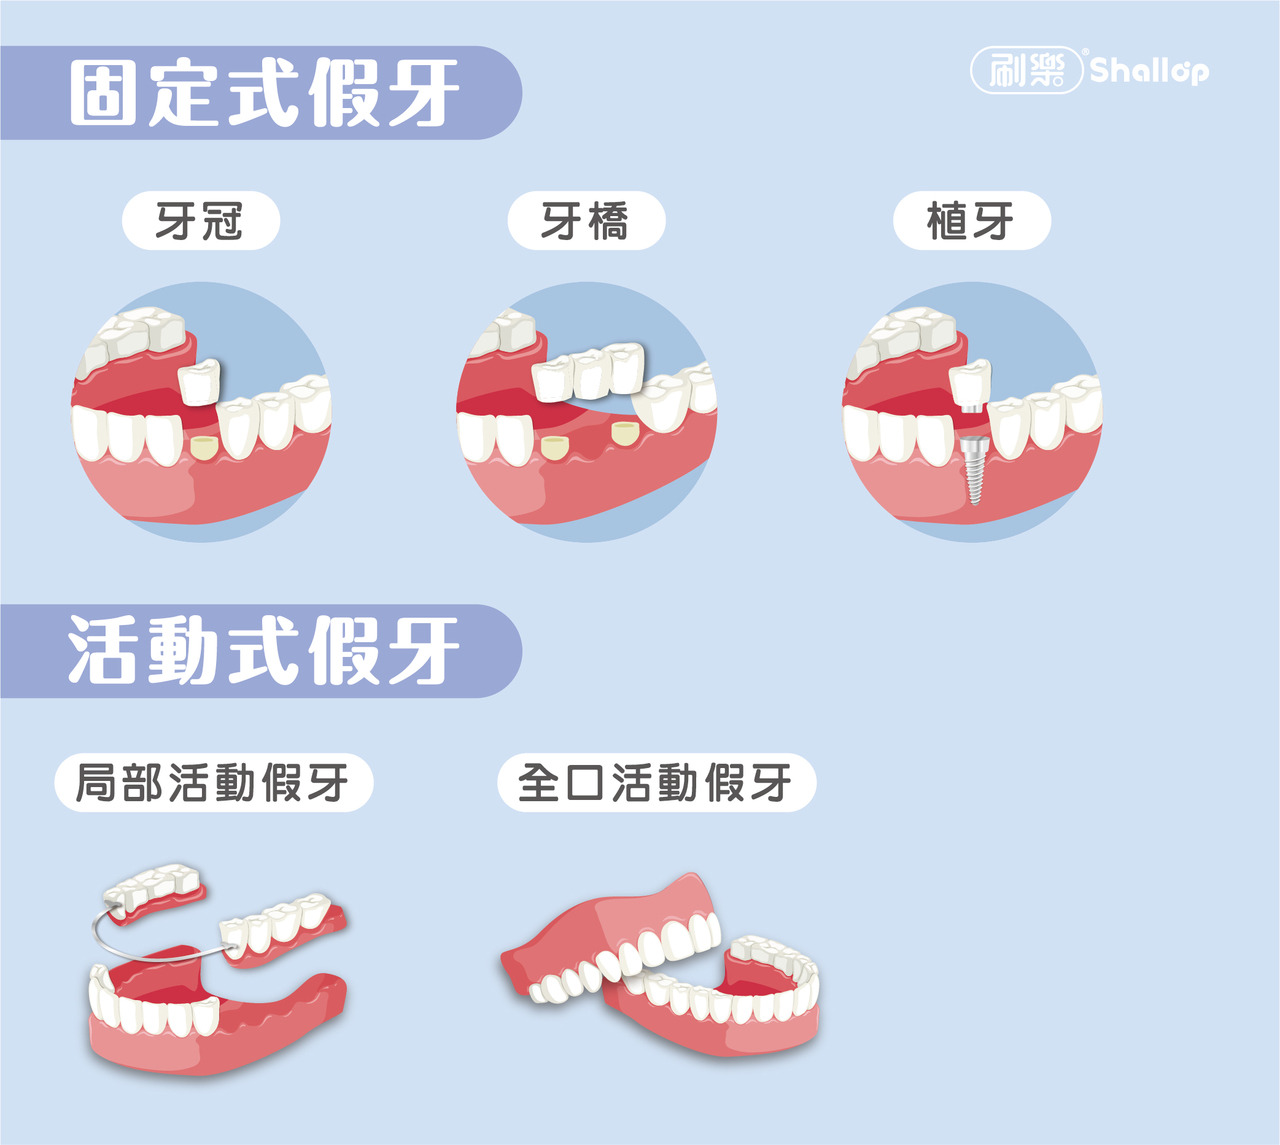 刷樂口腔保健室-拔牙一定要裝假牙嗎?